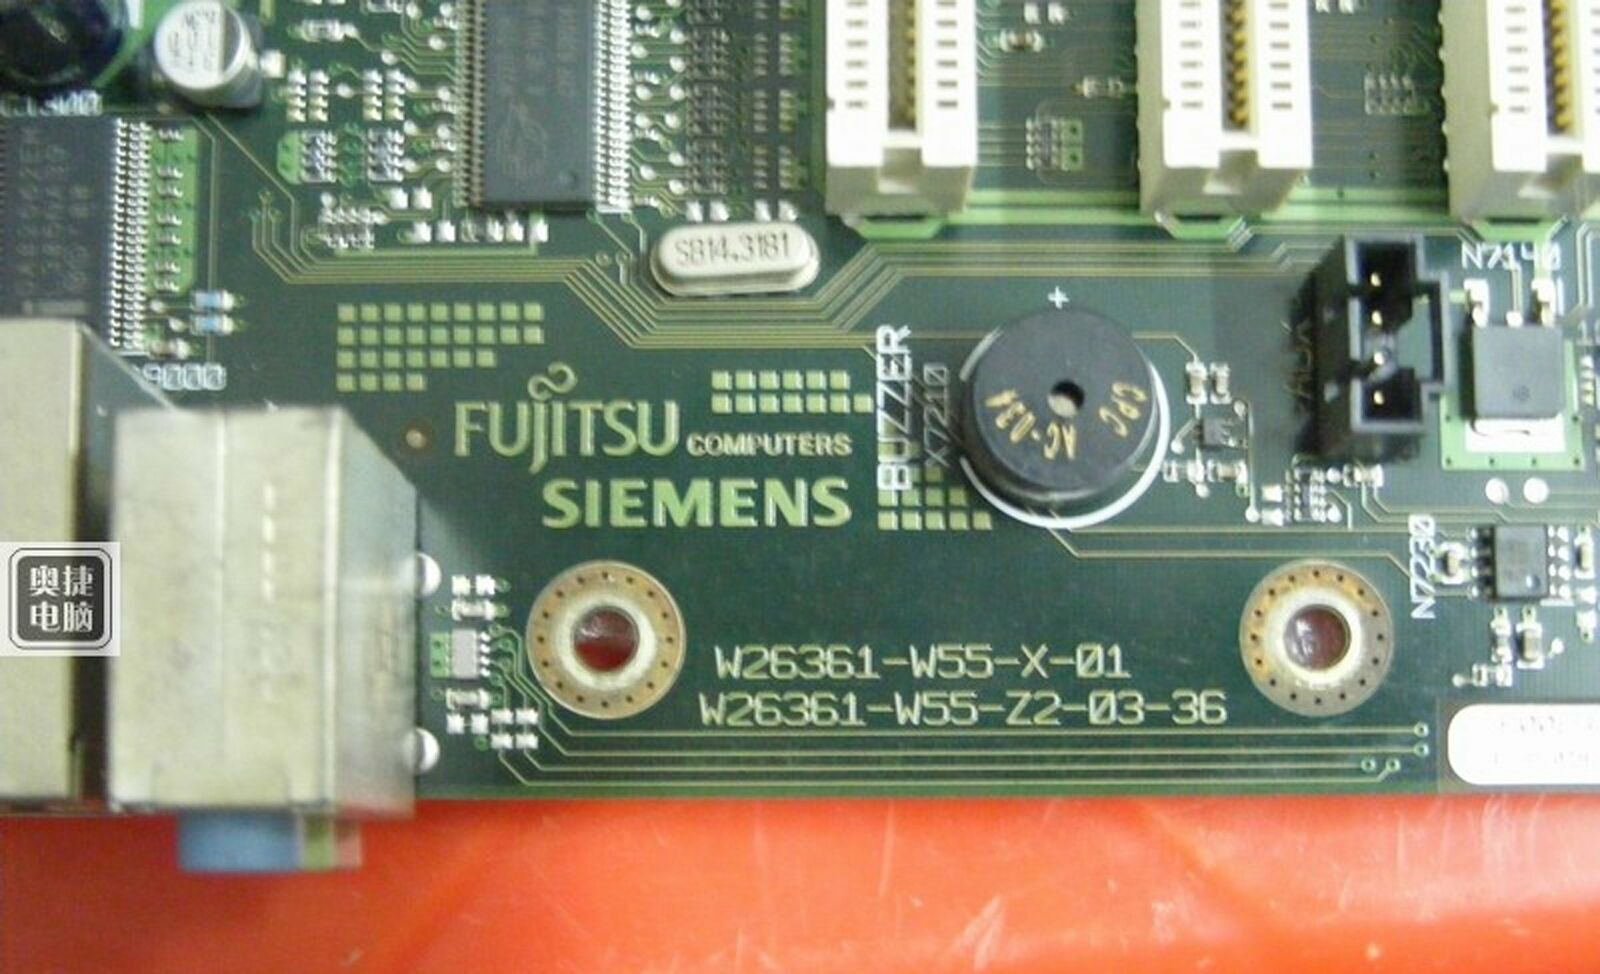 used  Fujitsu Siemens board W26361-W55-X-01 W26361-W55-Z2-03-36 Tested Good